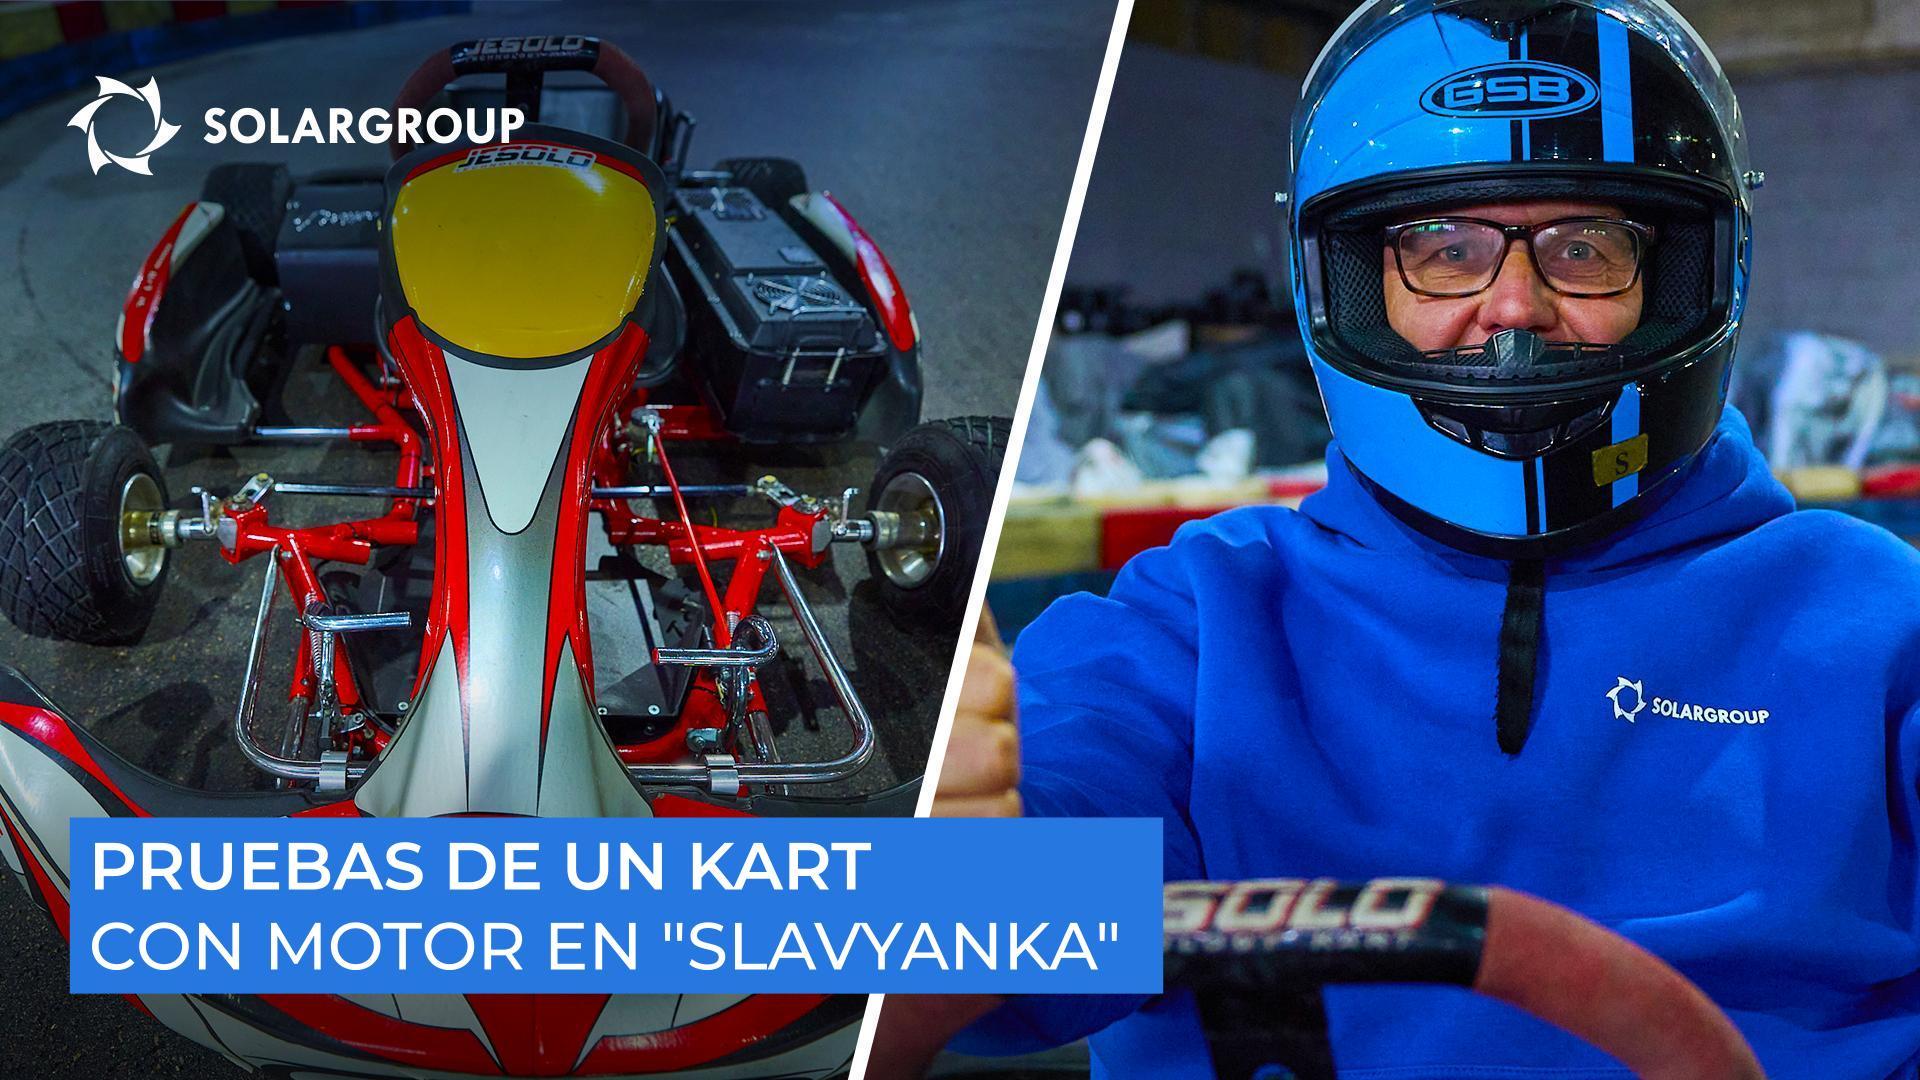 "Este es el verdadero futuro del karting eléctrico!"